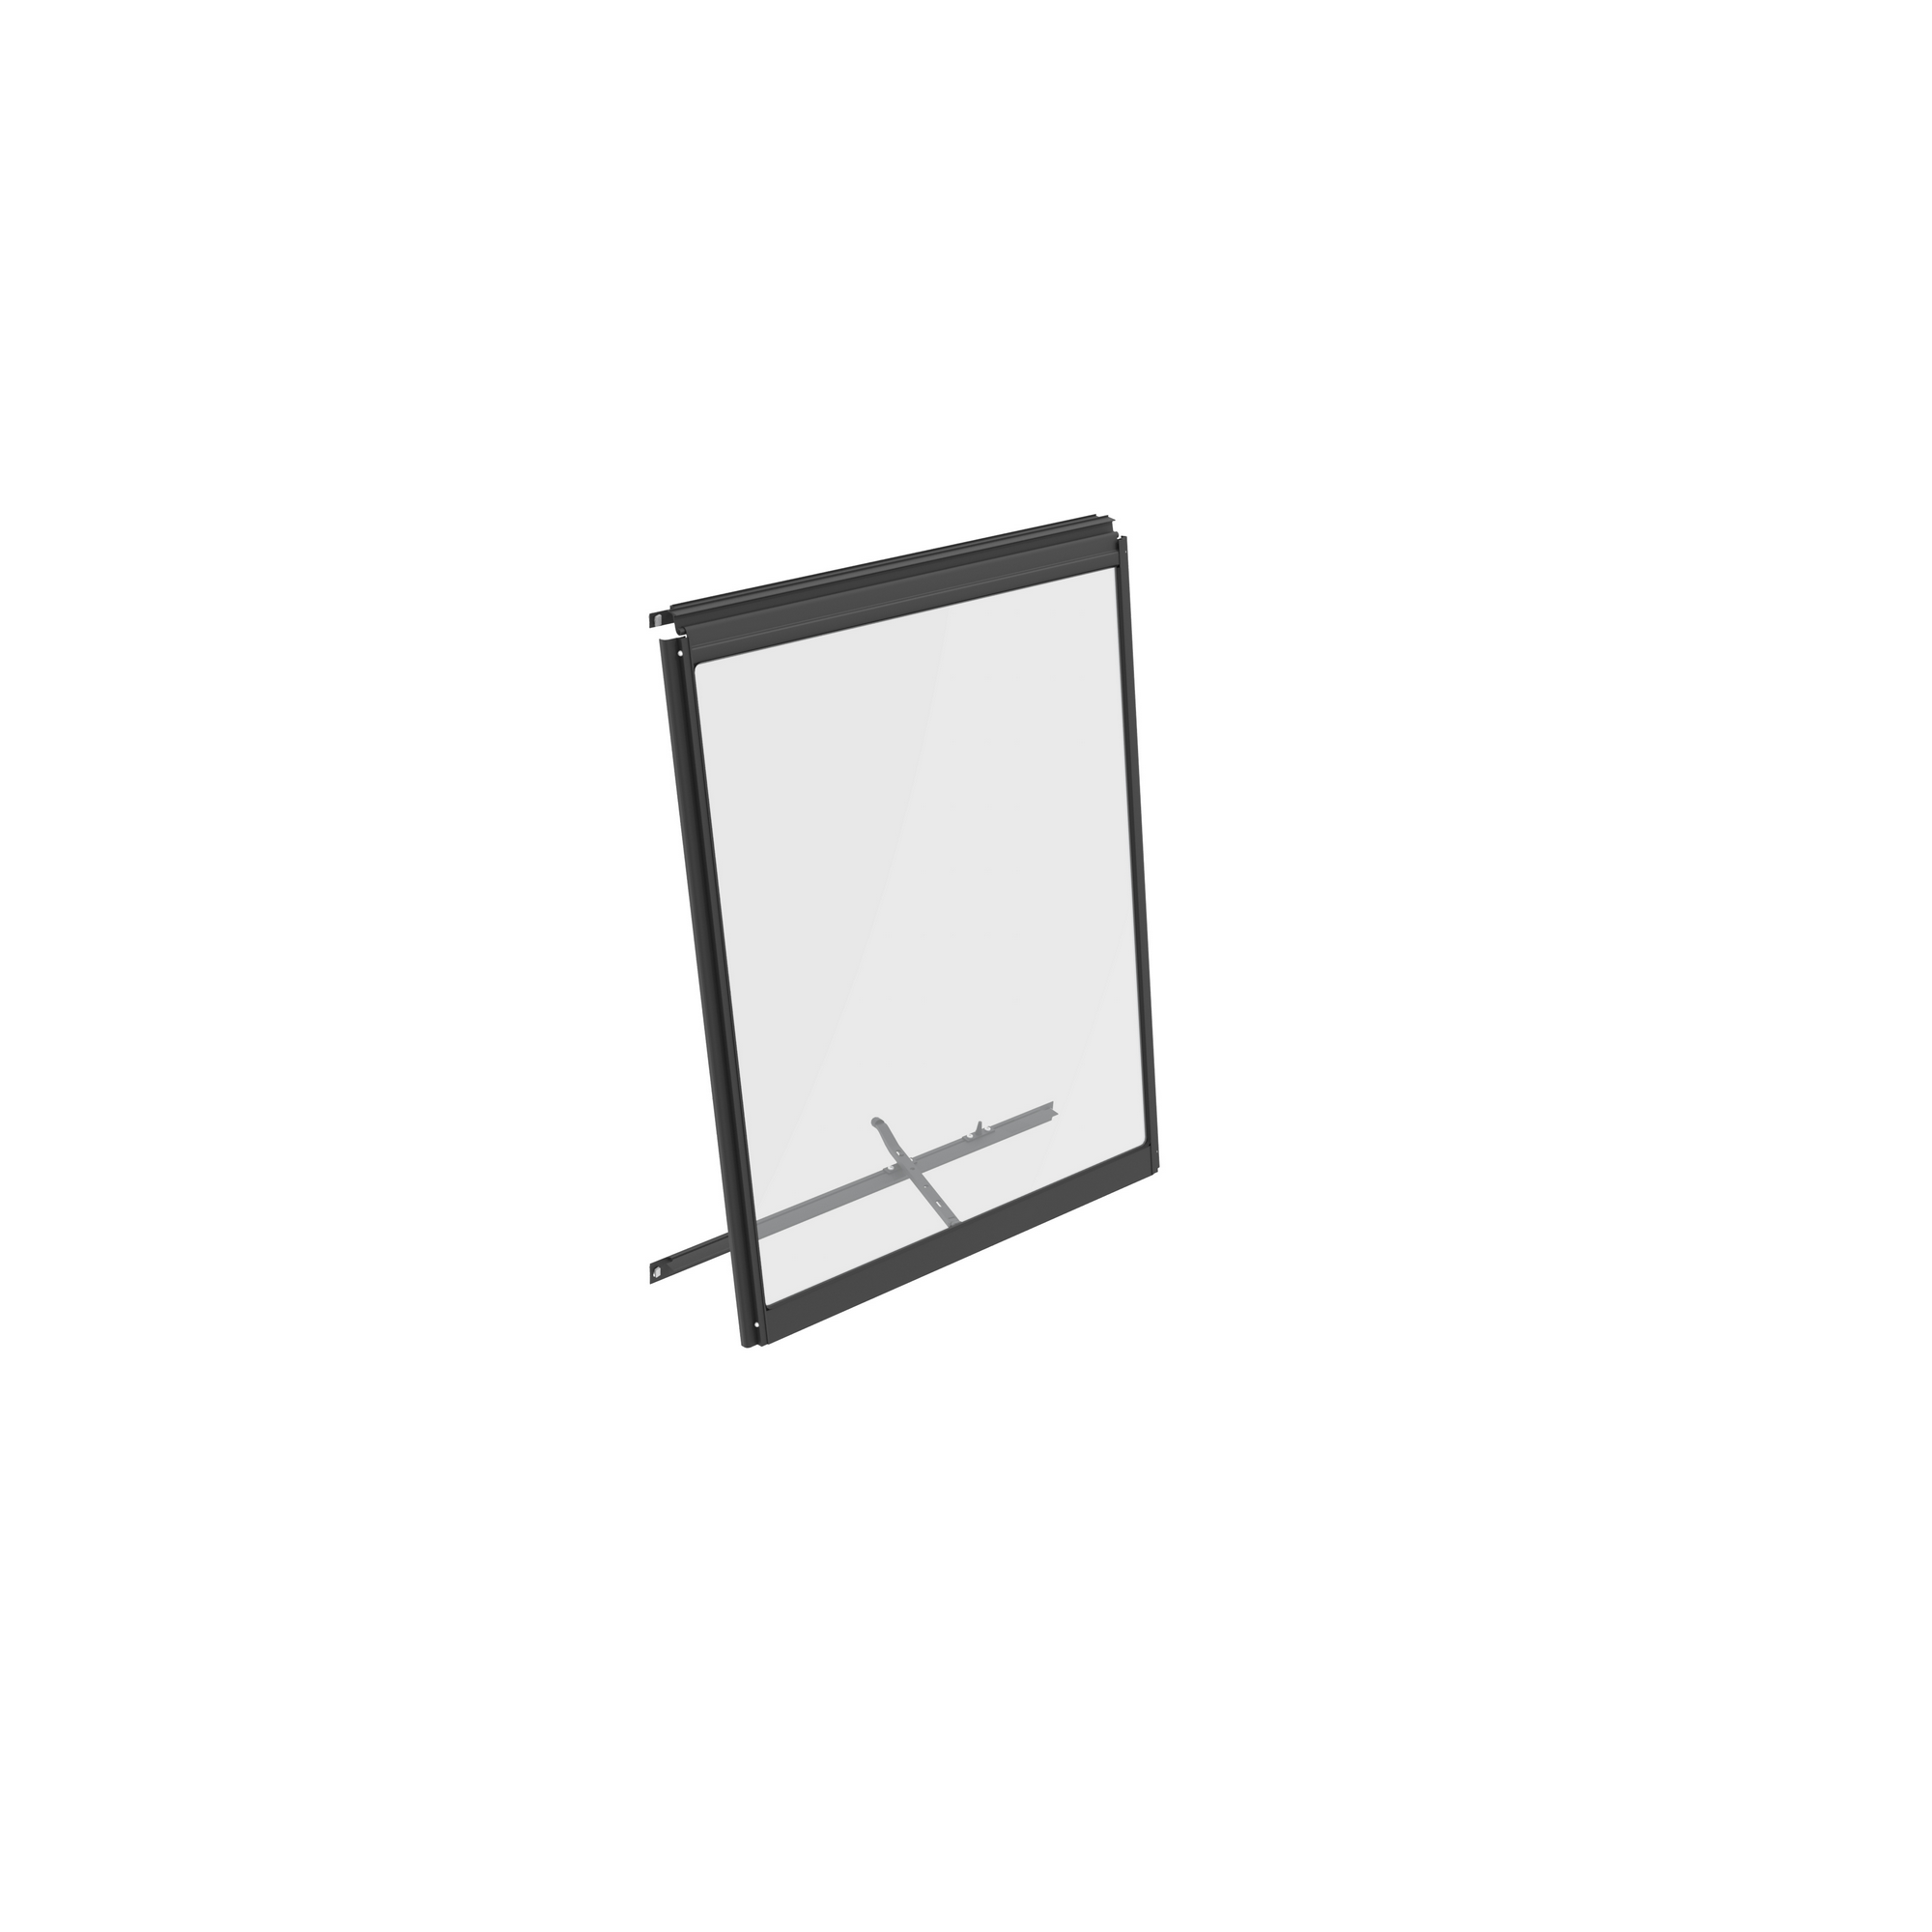 Seitenfenster 'V' ESG Aluminium schwarz 59,5 x 79,2 cm für Vitavia Gewächshäuser + product picture